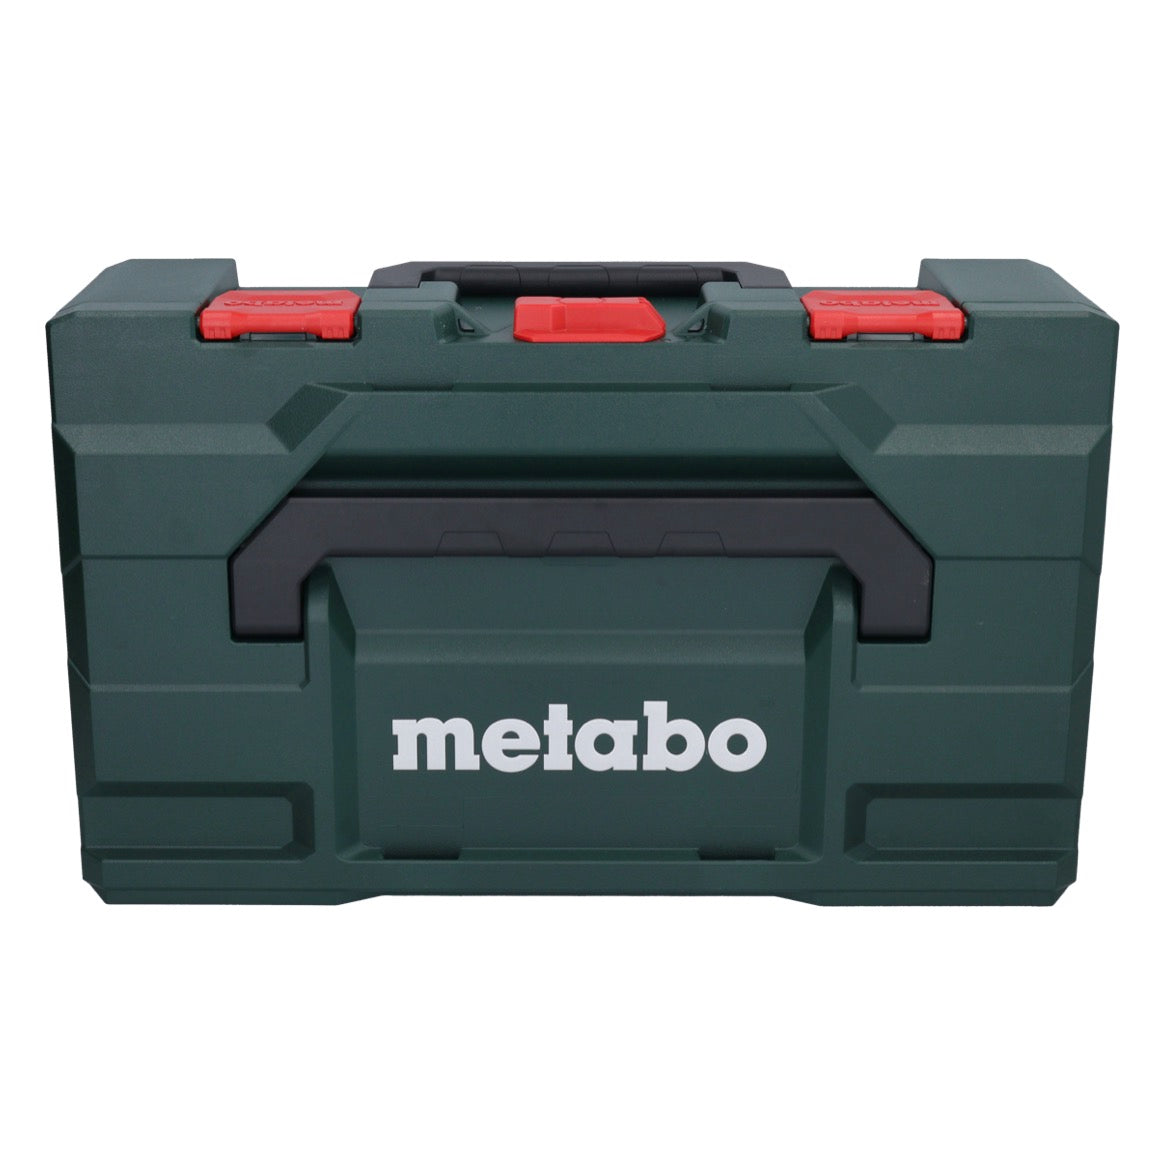 Metabo W 18 L 9-125 Akku Winkelschleifer 18 V 125 mm + 1x Akku 4,0 Ah + Ladegerät + metaBOX